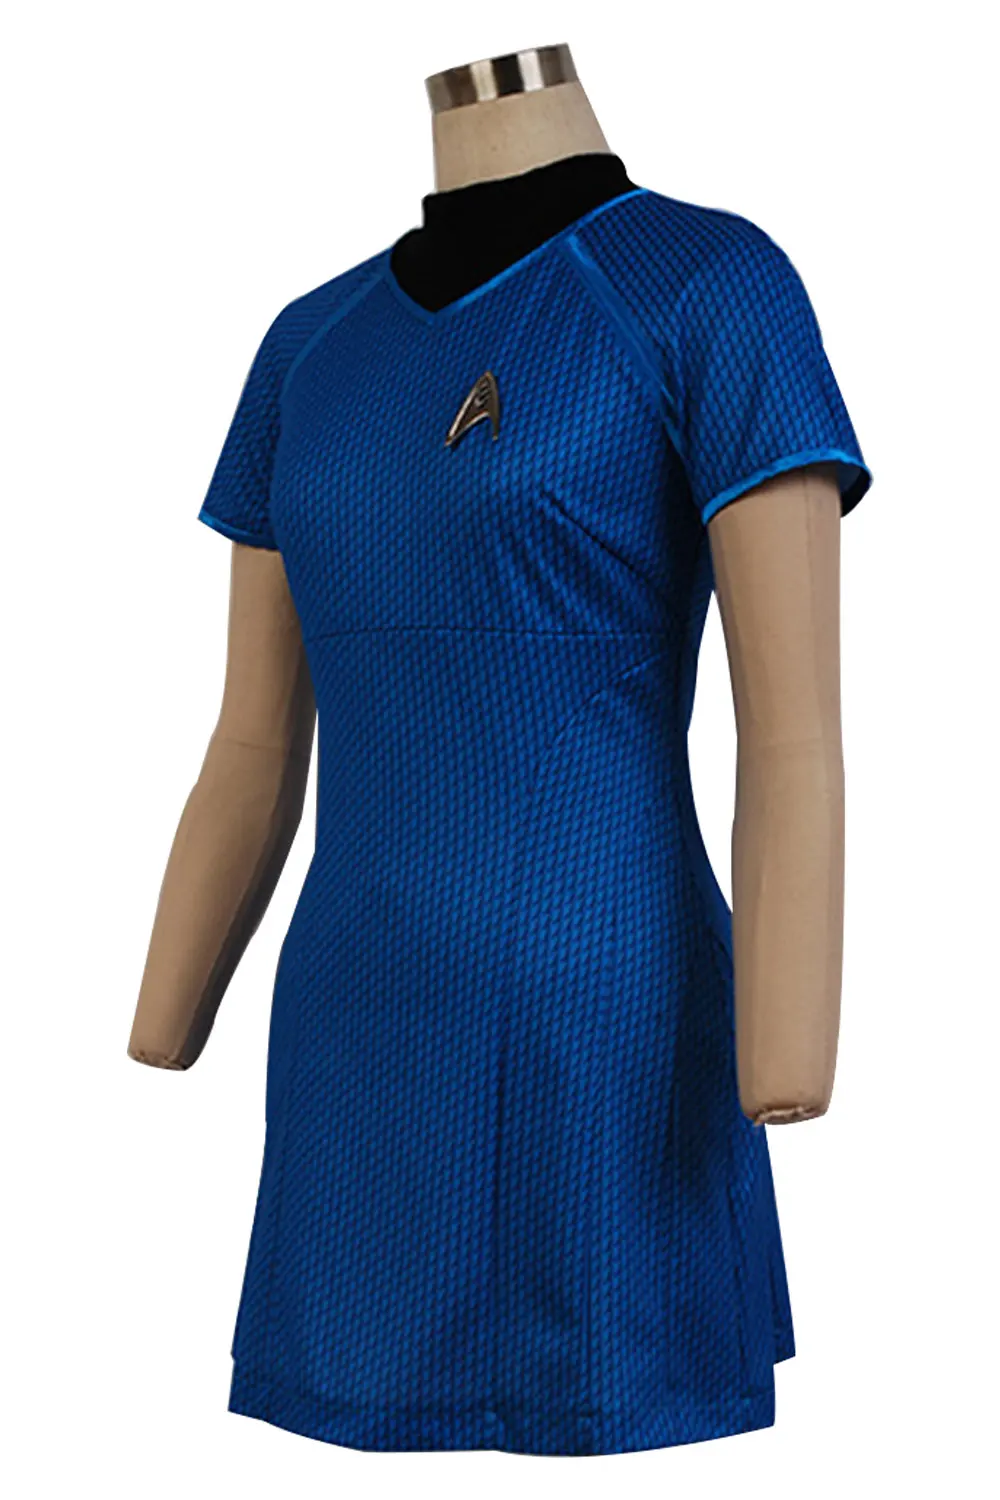 Звездный Косплей Trek Into Darkness Униформа платье Женский костюм девушки Флит Uhura голубое платье нарядный Хэллоуин